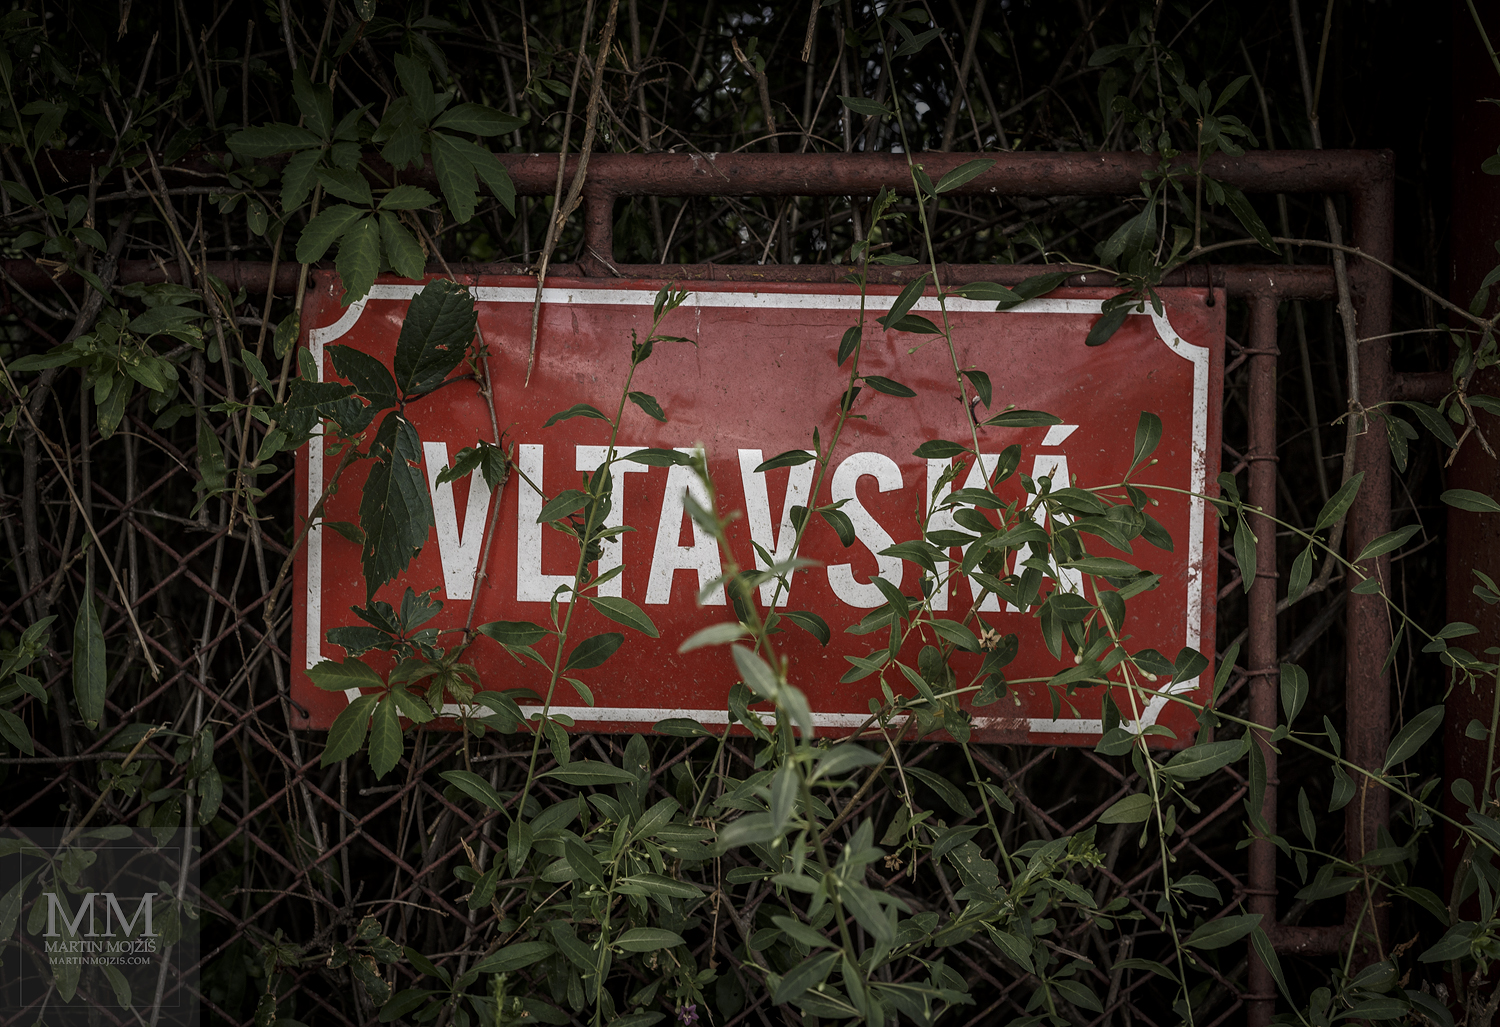 Fotografie názvu ulice Vltavská, částečně skrytého za větvičkami keřů. Velkoformátová umělecká fotografie. Martin Mojžíš.